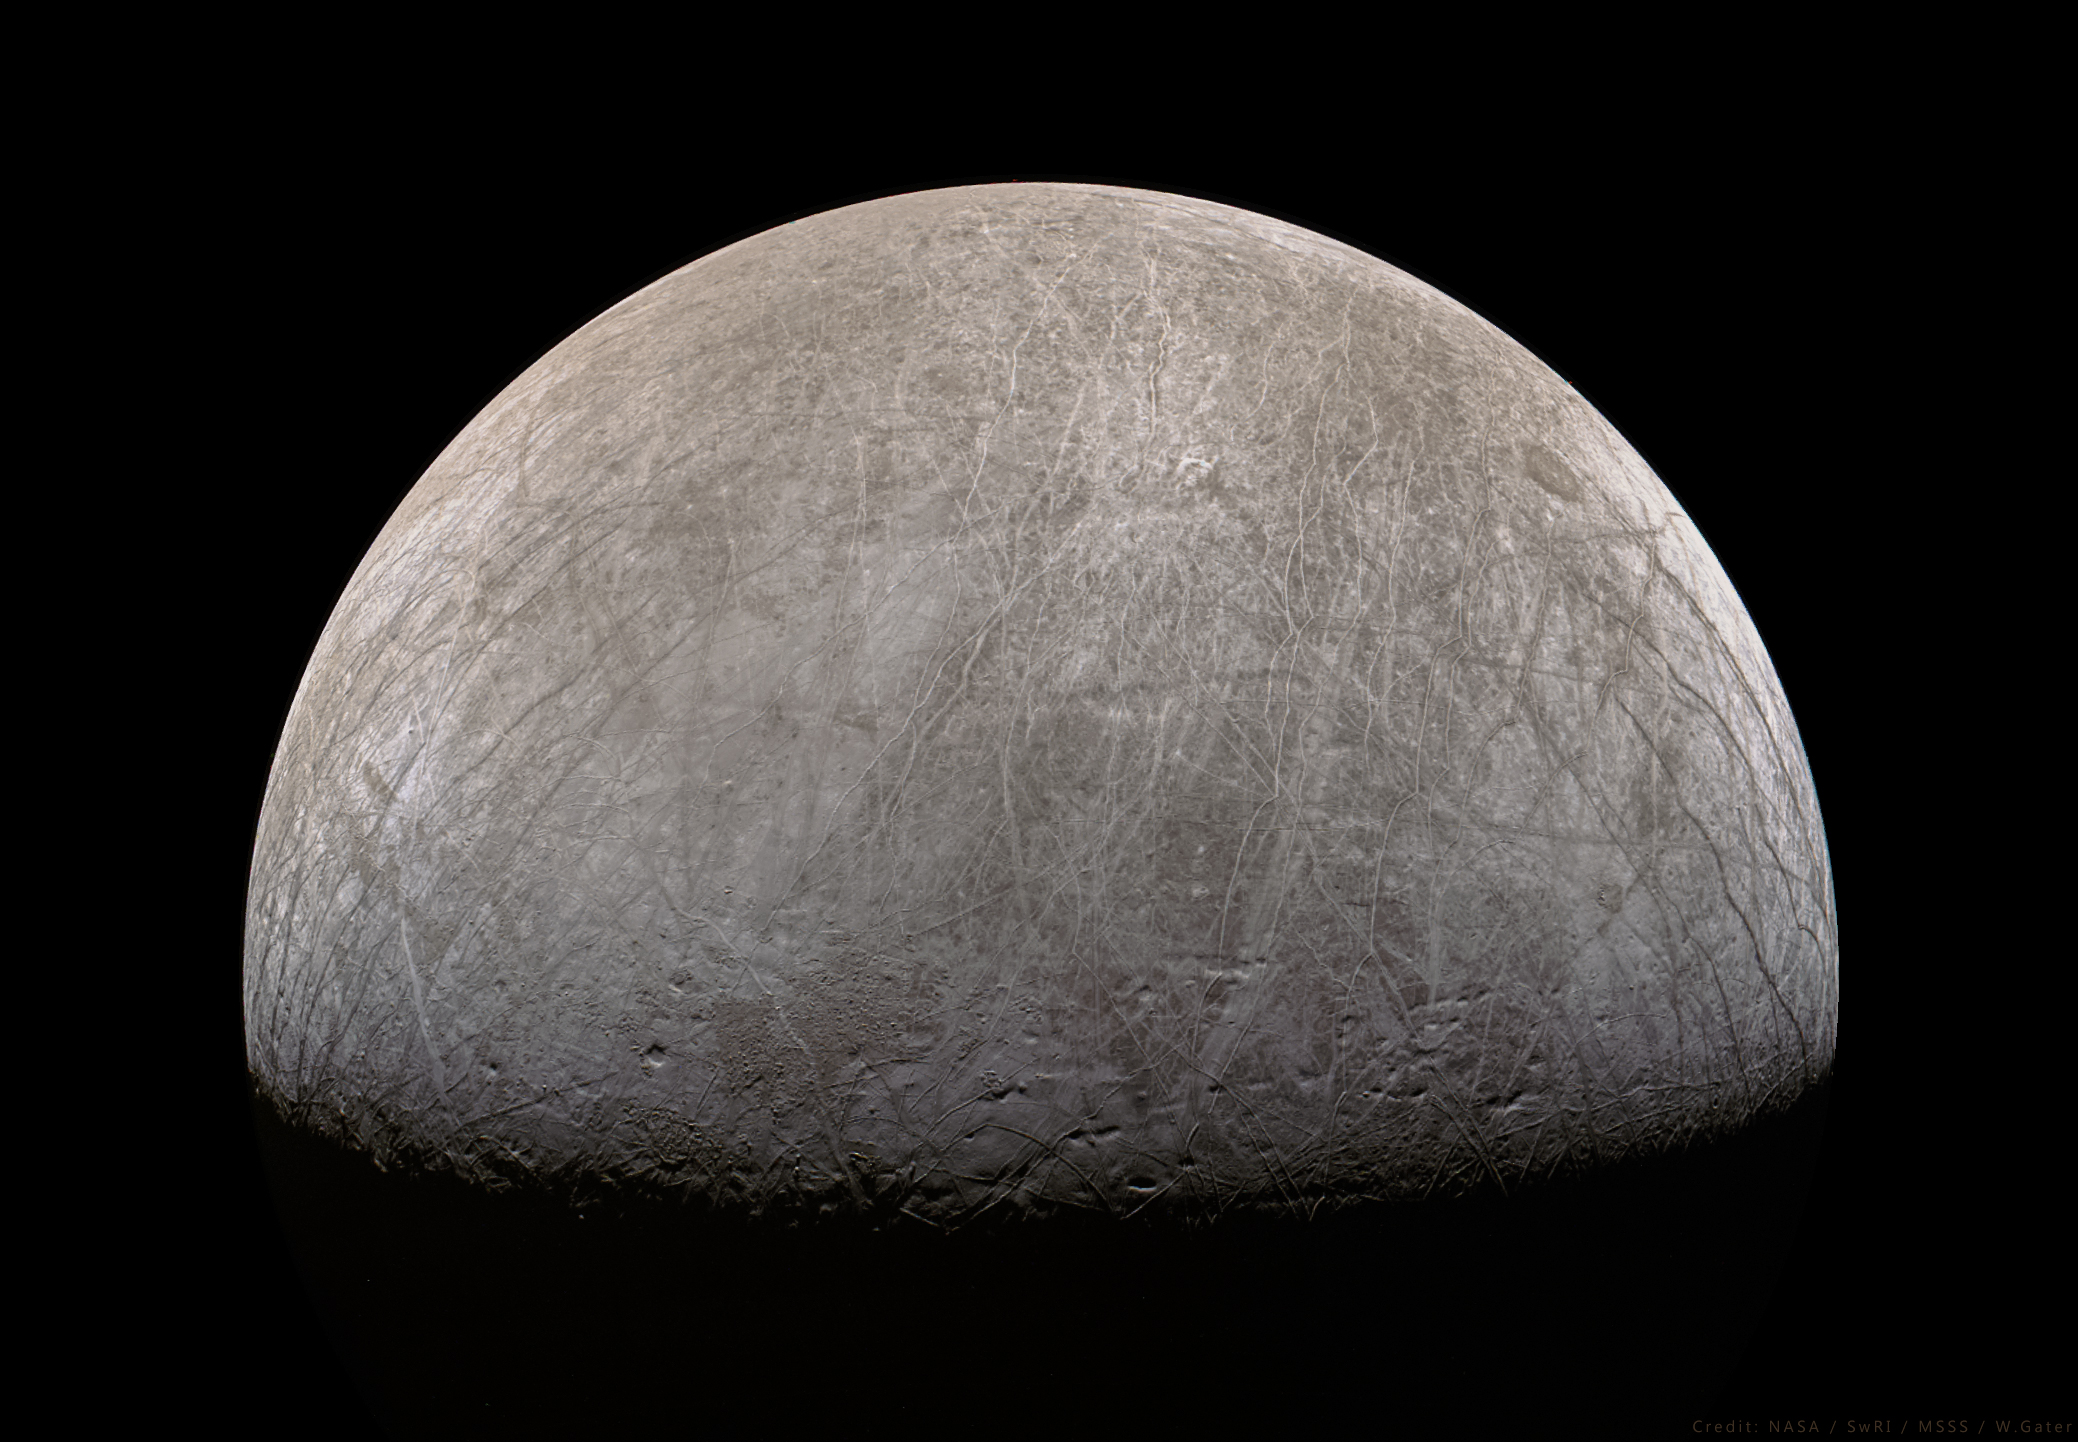 由朱诺号拍摄的欧罗巴圆盘图像，巨大的纵横交错的“网格”覆盖了整个星球。来源: NASA / SwRI / MSSS / W. Gater